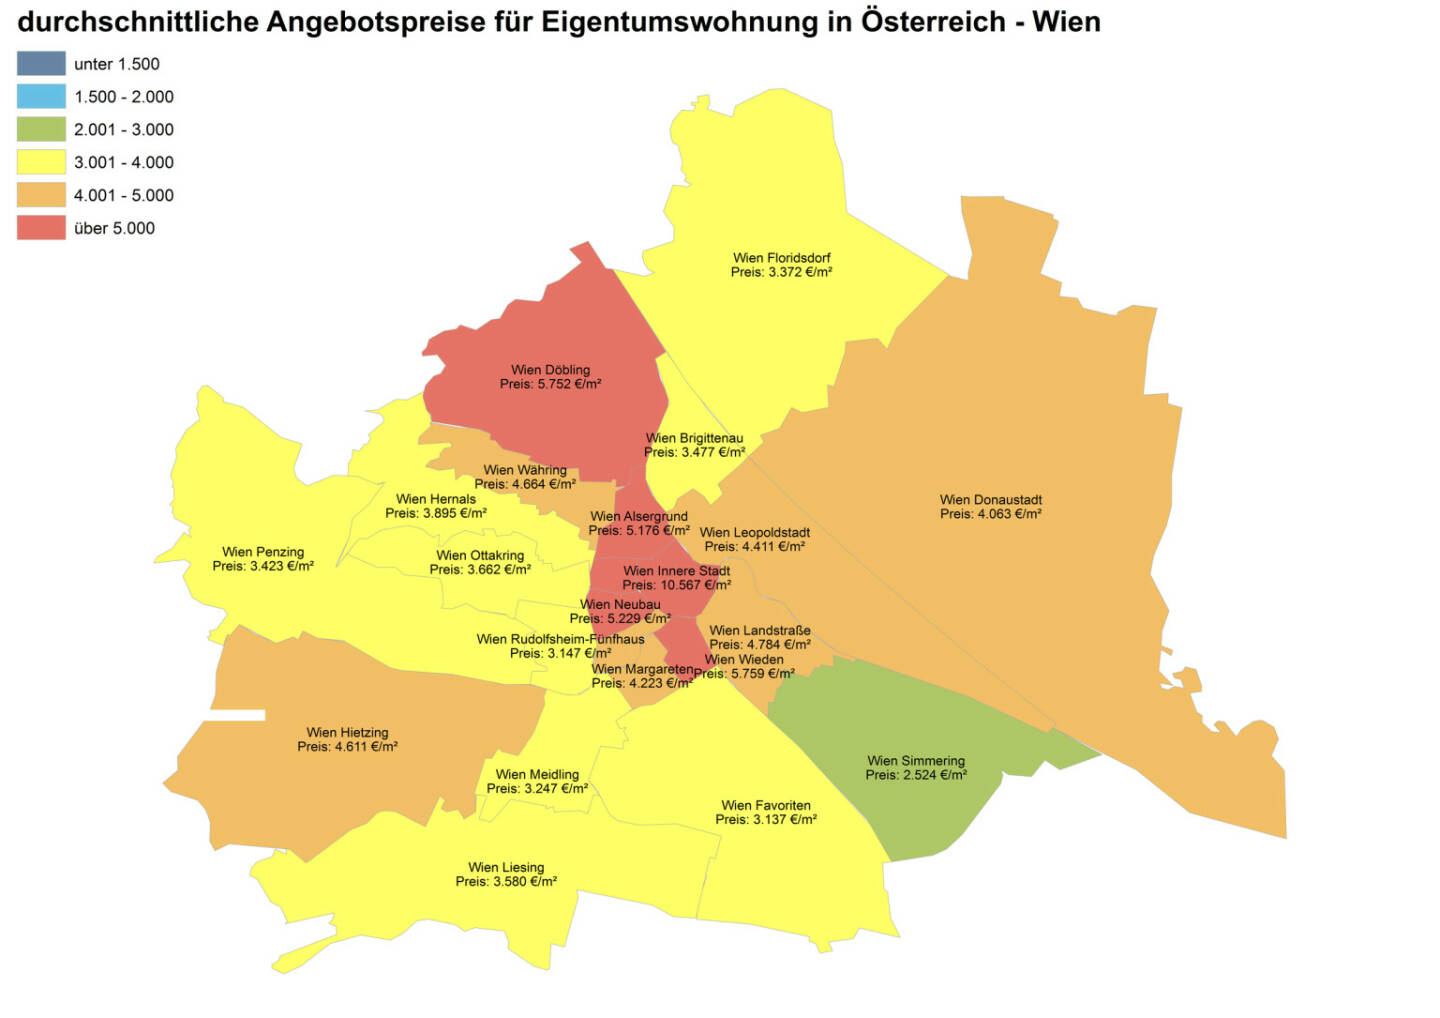 Durchschnittliche Angebotspreise für Eigentumswohnungen in Österreich - Wien, Quelle: ImmobilienScout24 und Immobilienring IR